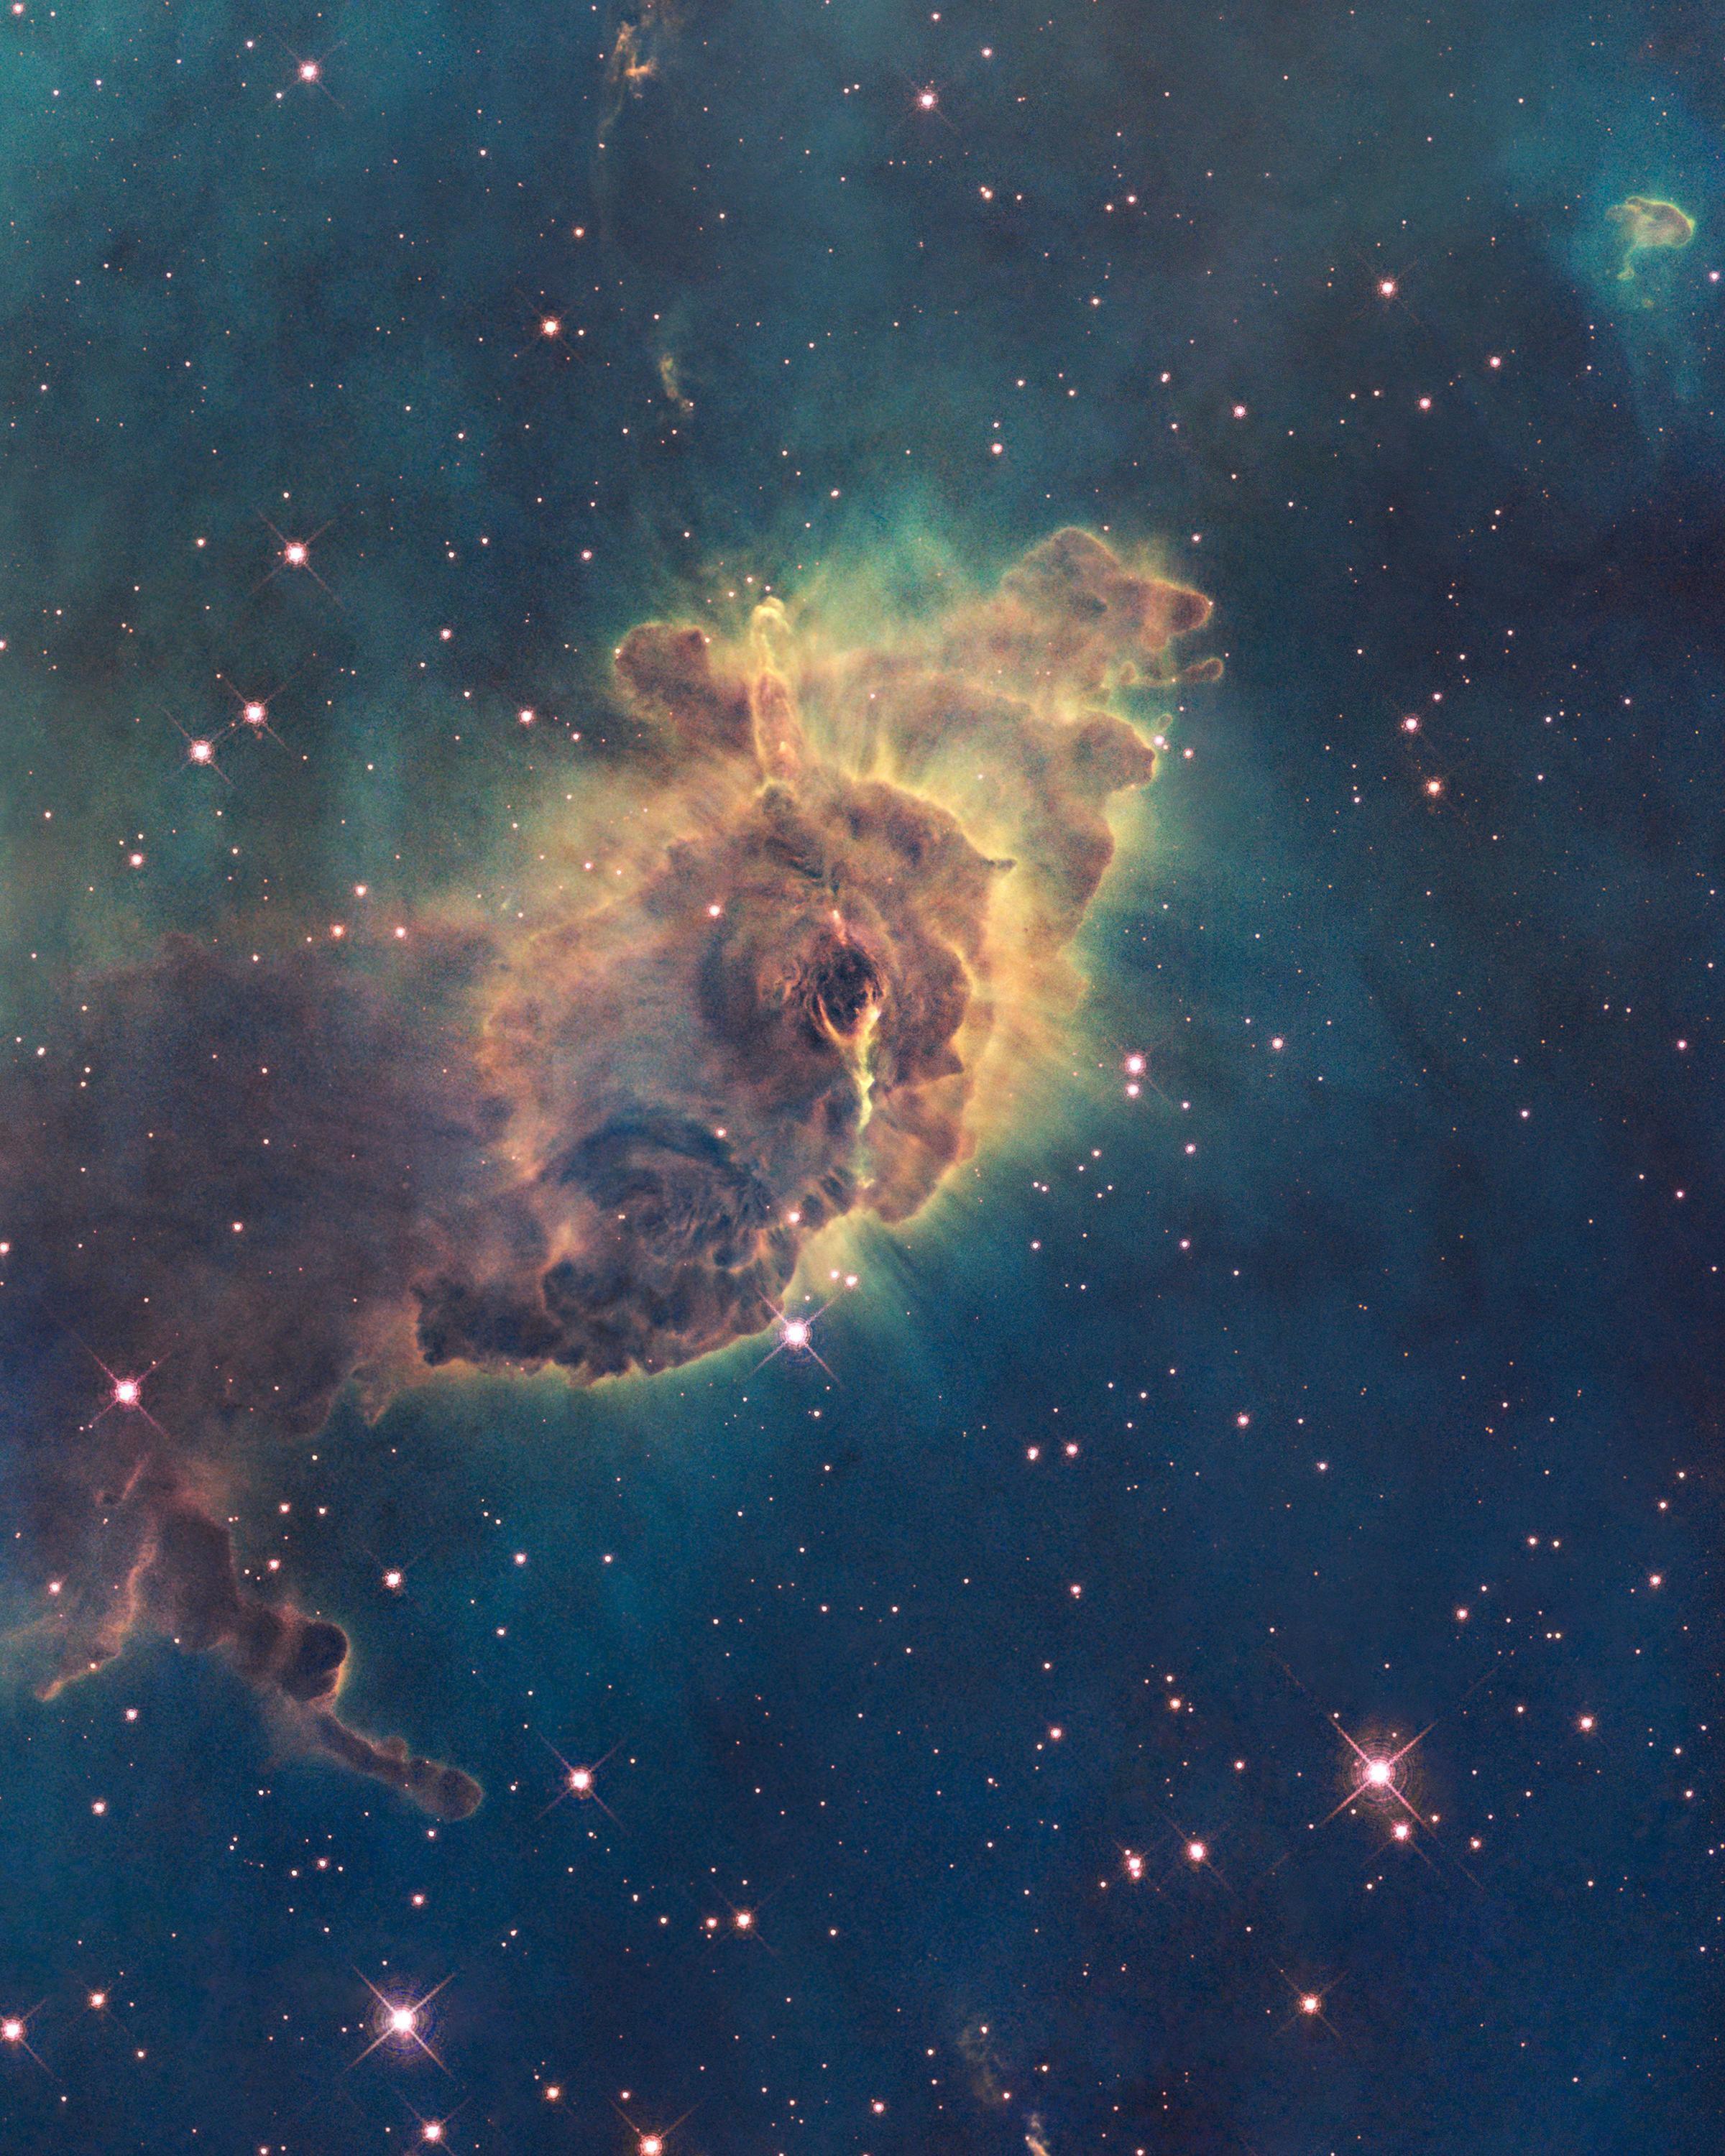 HubbleSite Printshop: Step 2